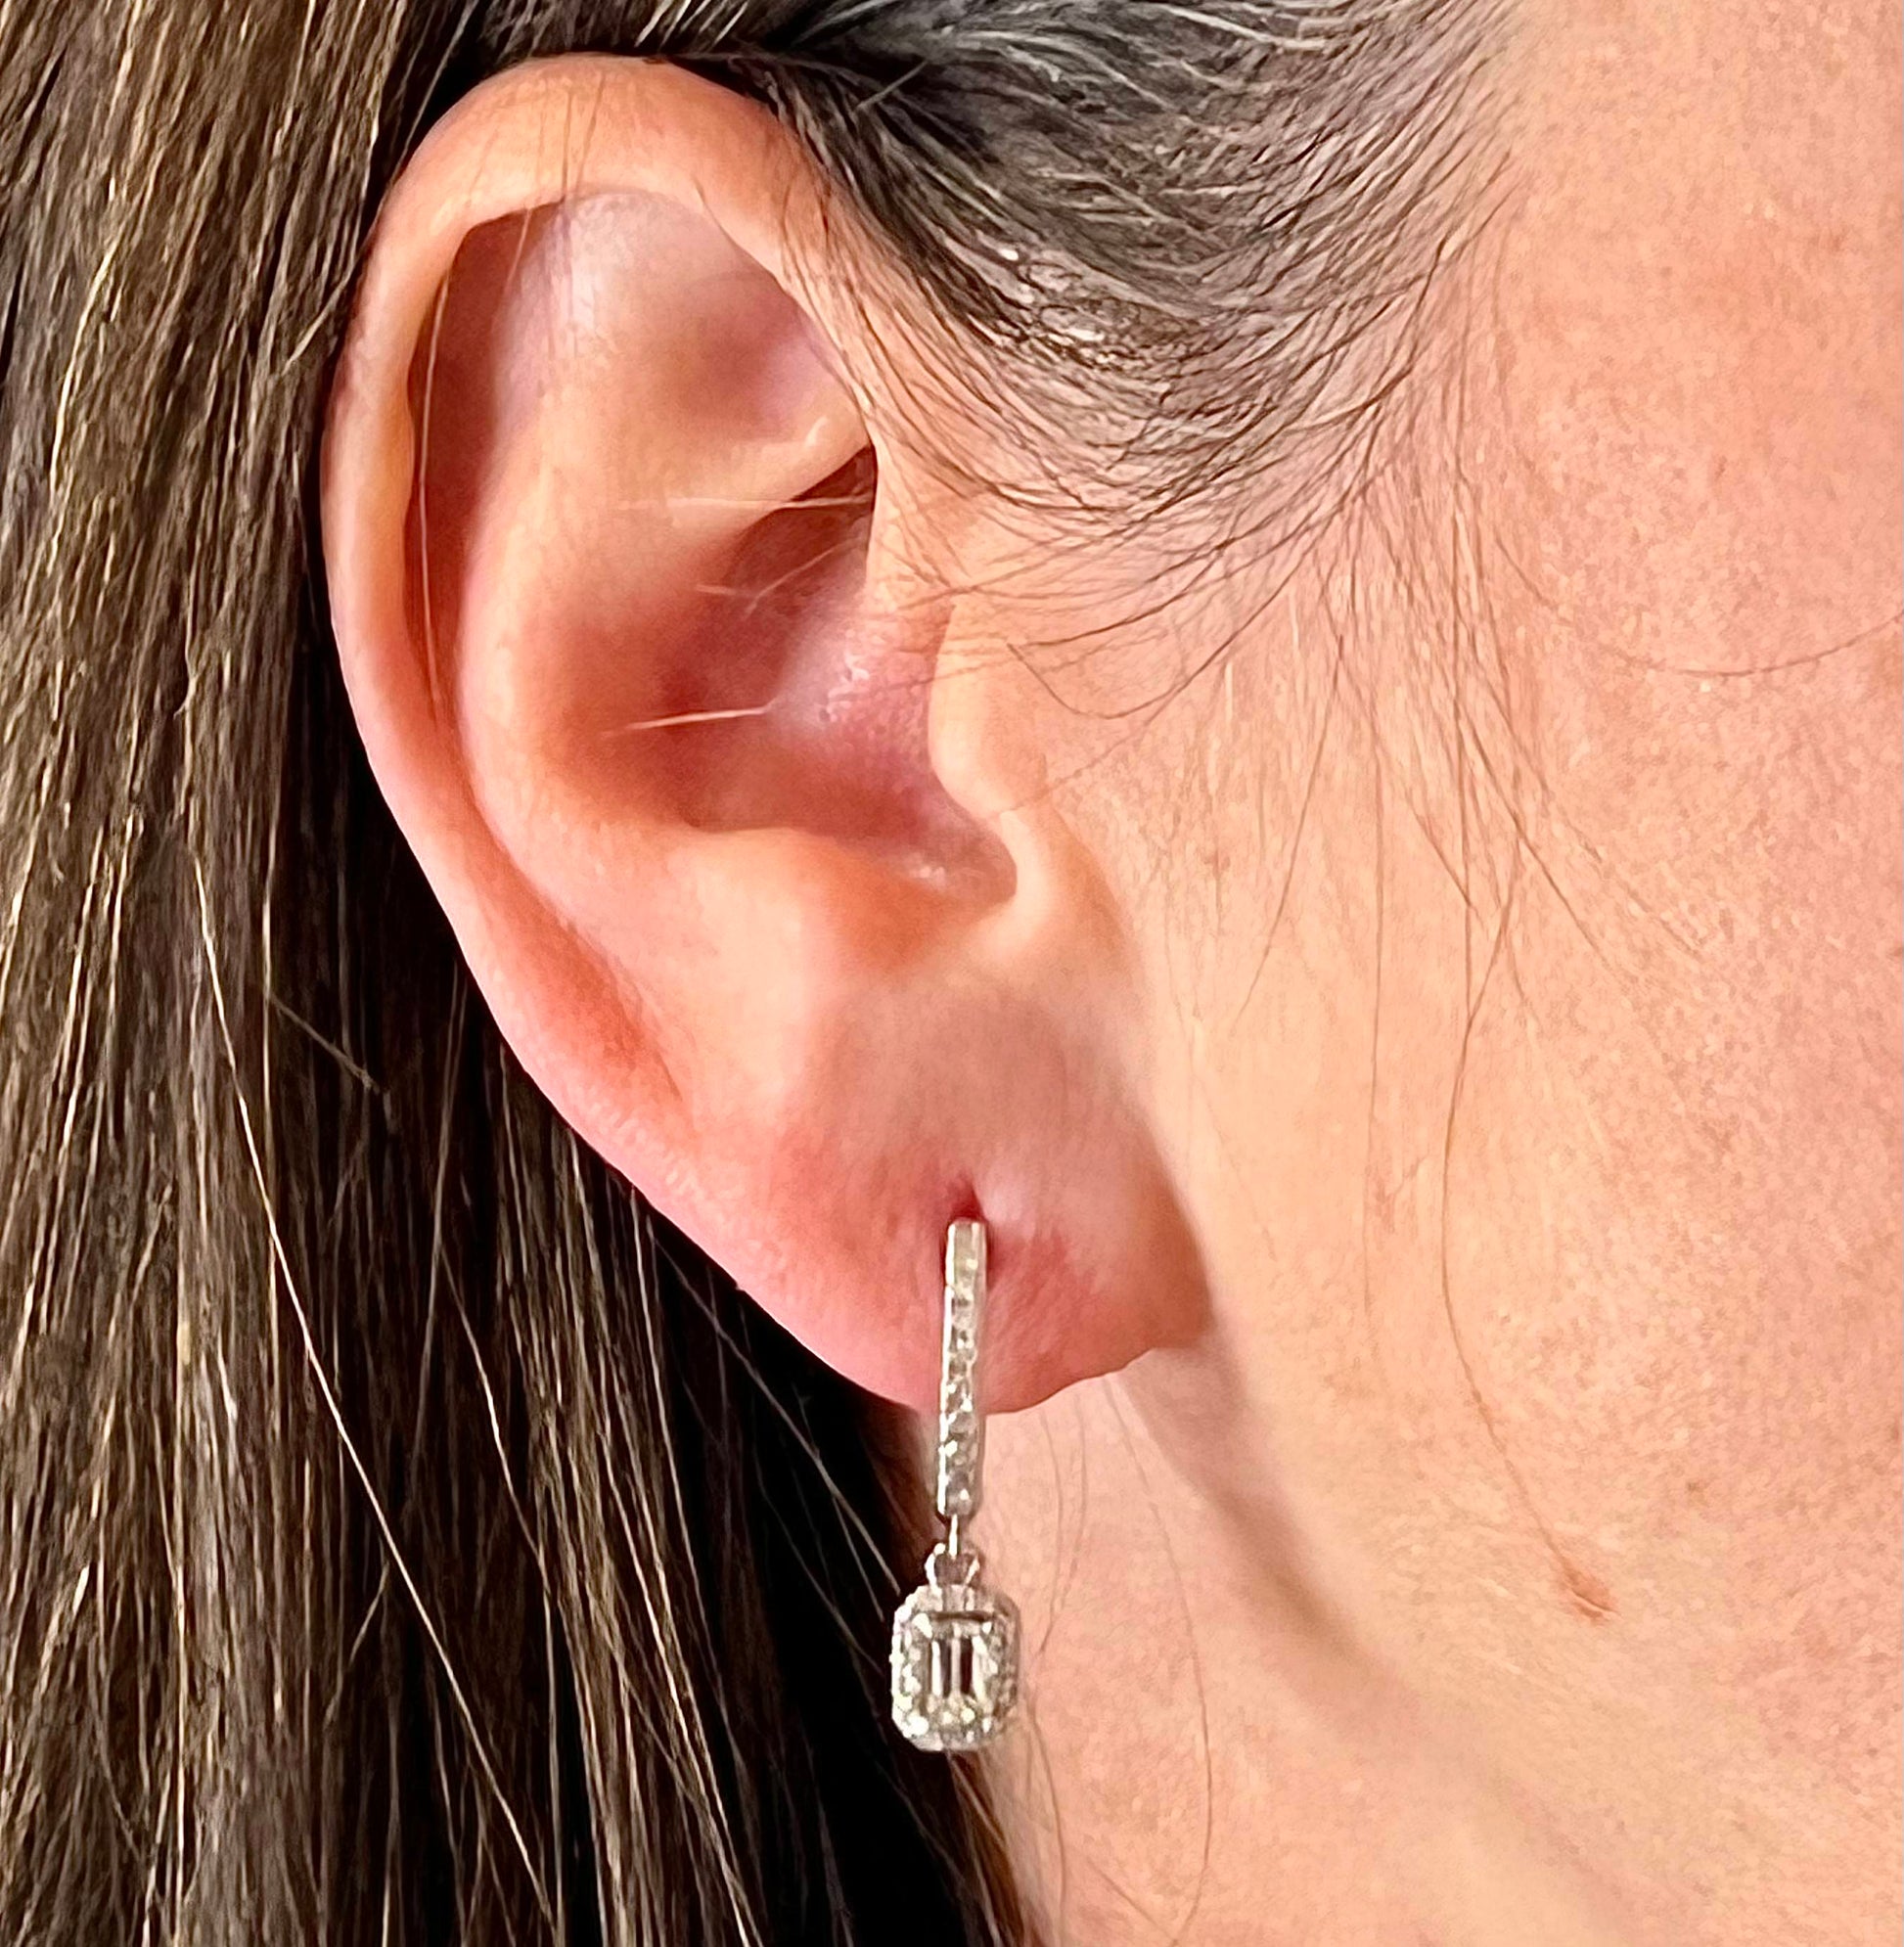 Natural Sapphire Diamond Dangle Earrings 14k WG 1.16 TCW Certified $4,250 211177 - Certified Fine Jewelry